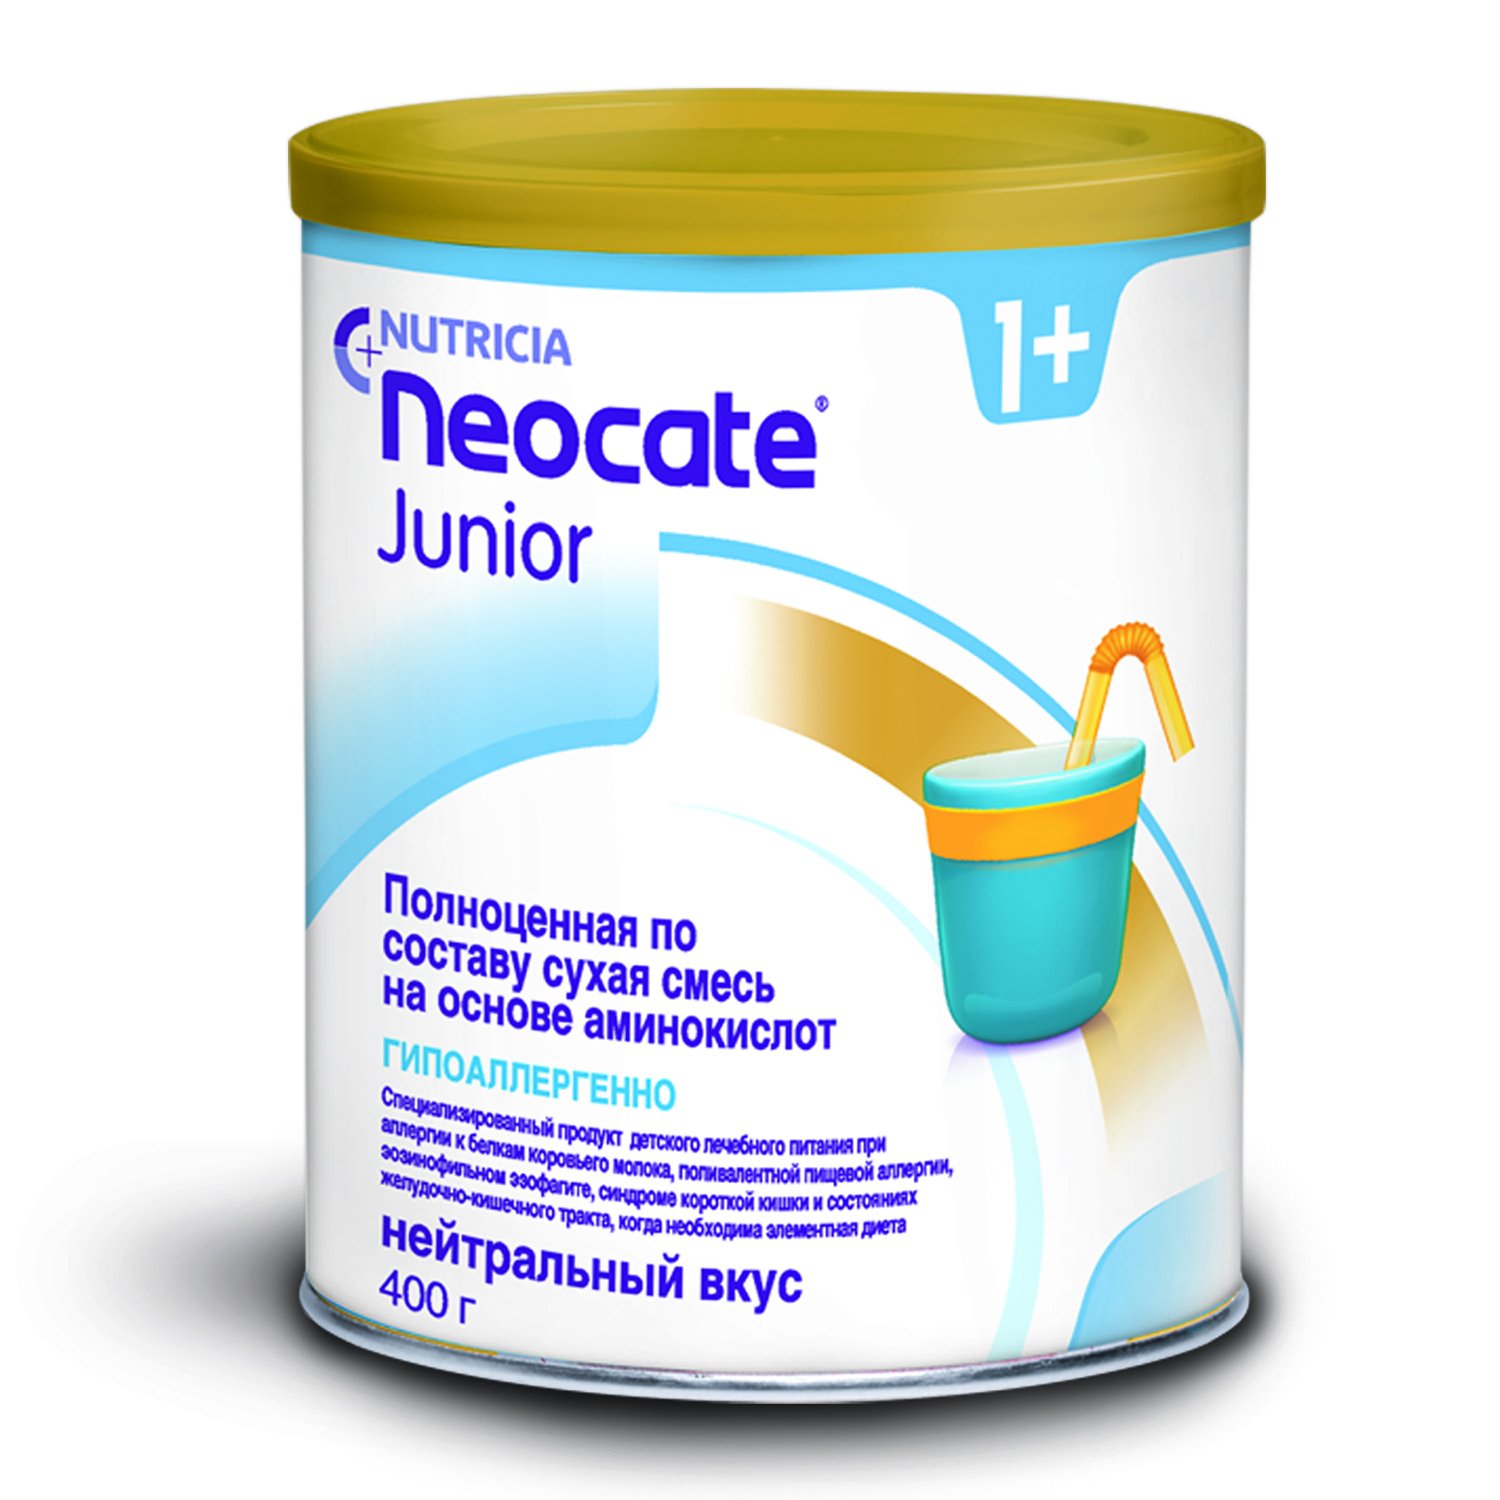 Сухая смесь Nutricia NEOCATE Junior на основе аминокислот 400 гр (652710)